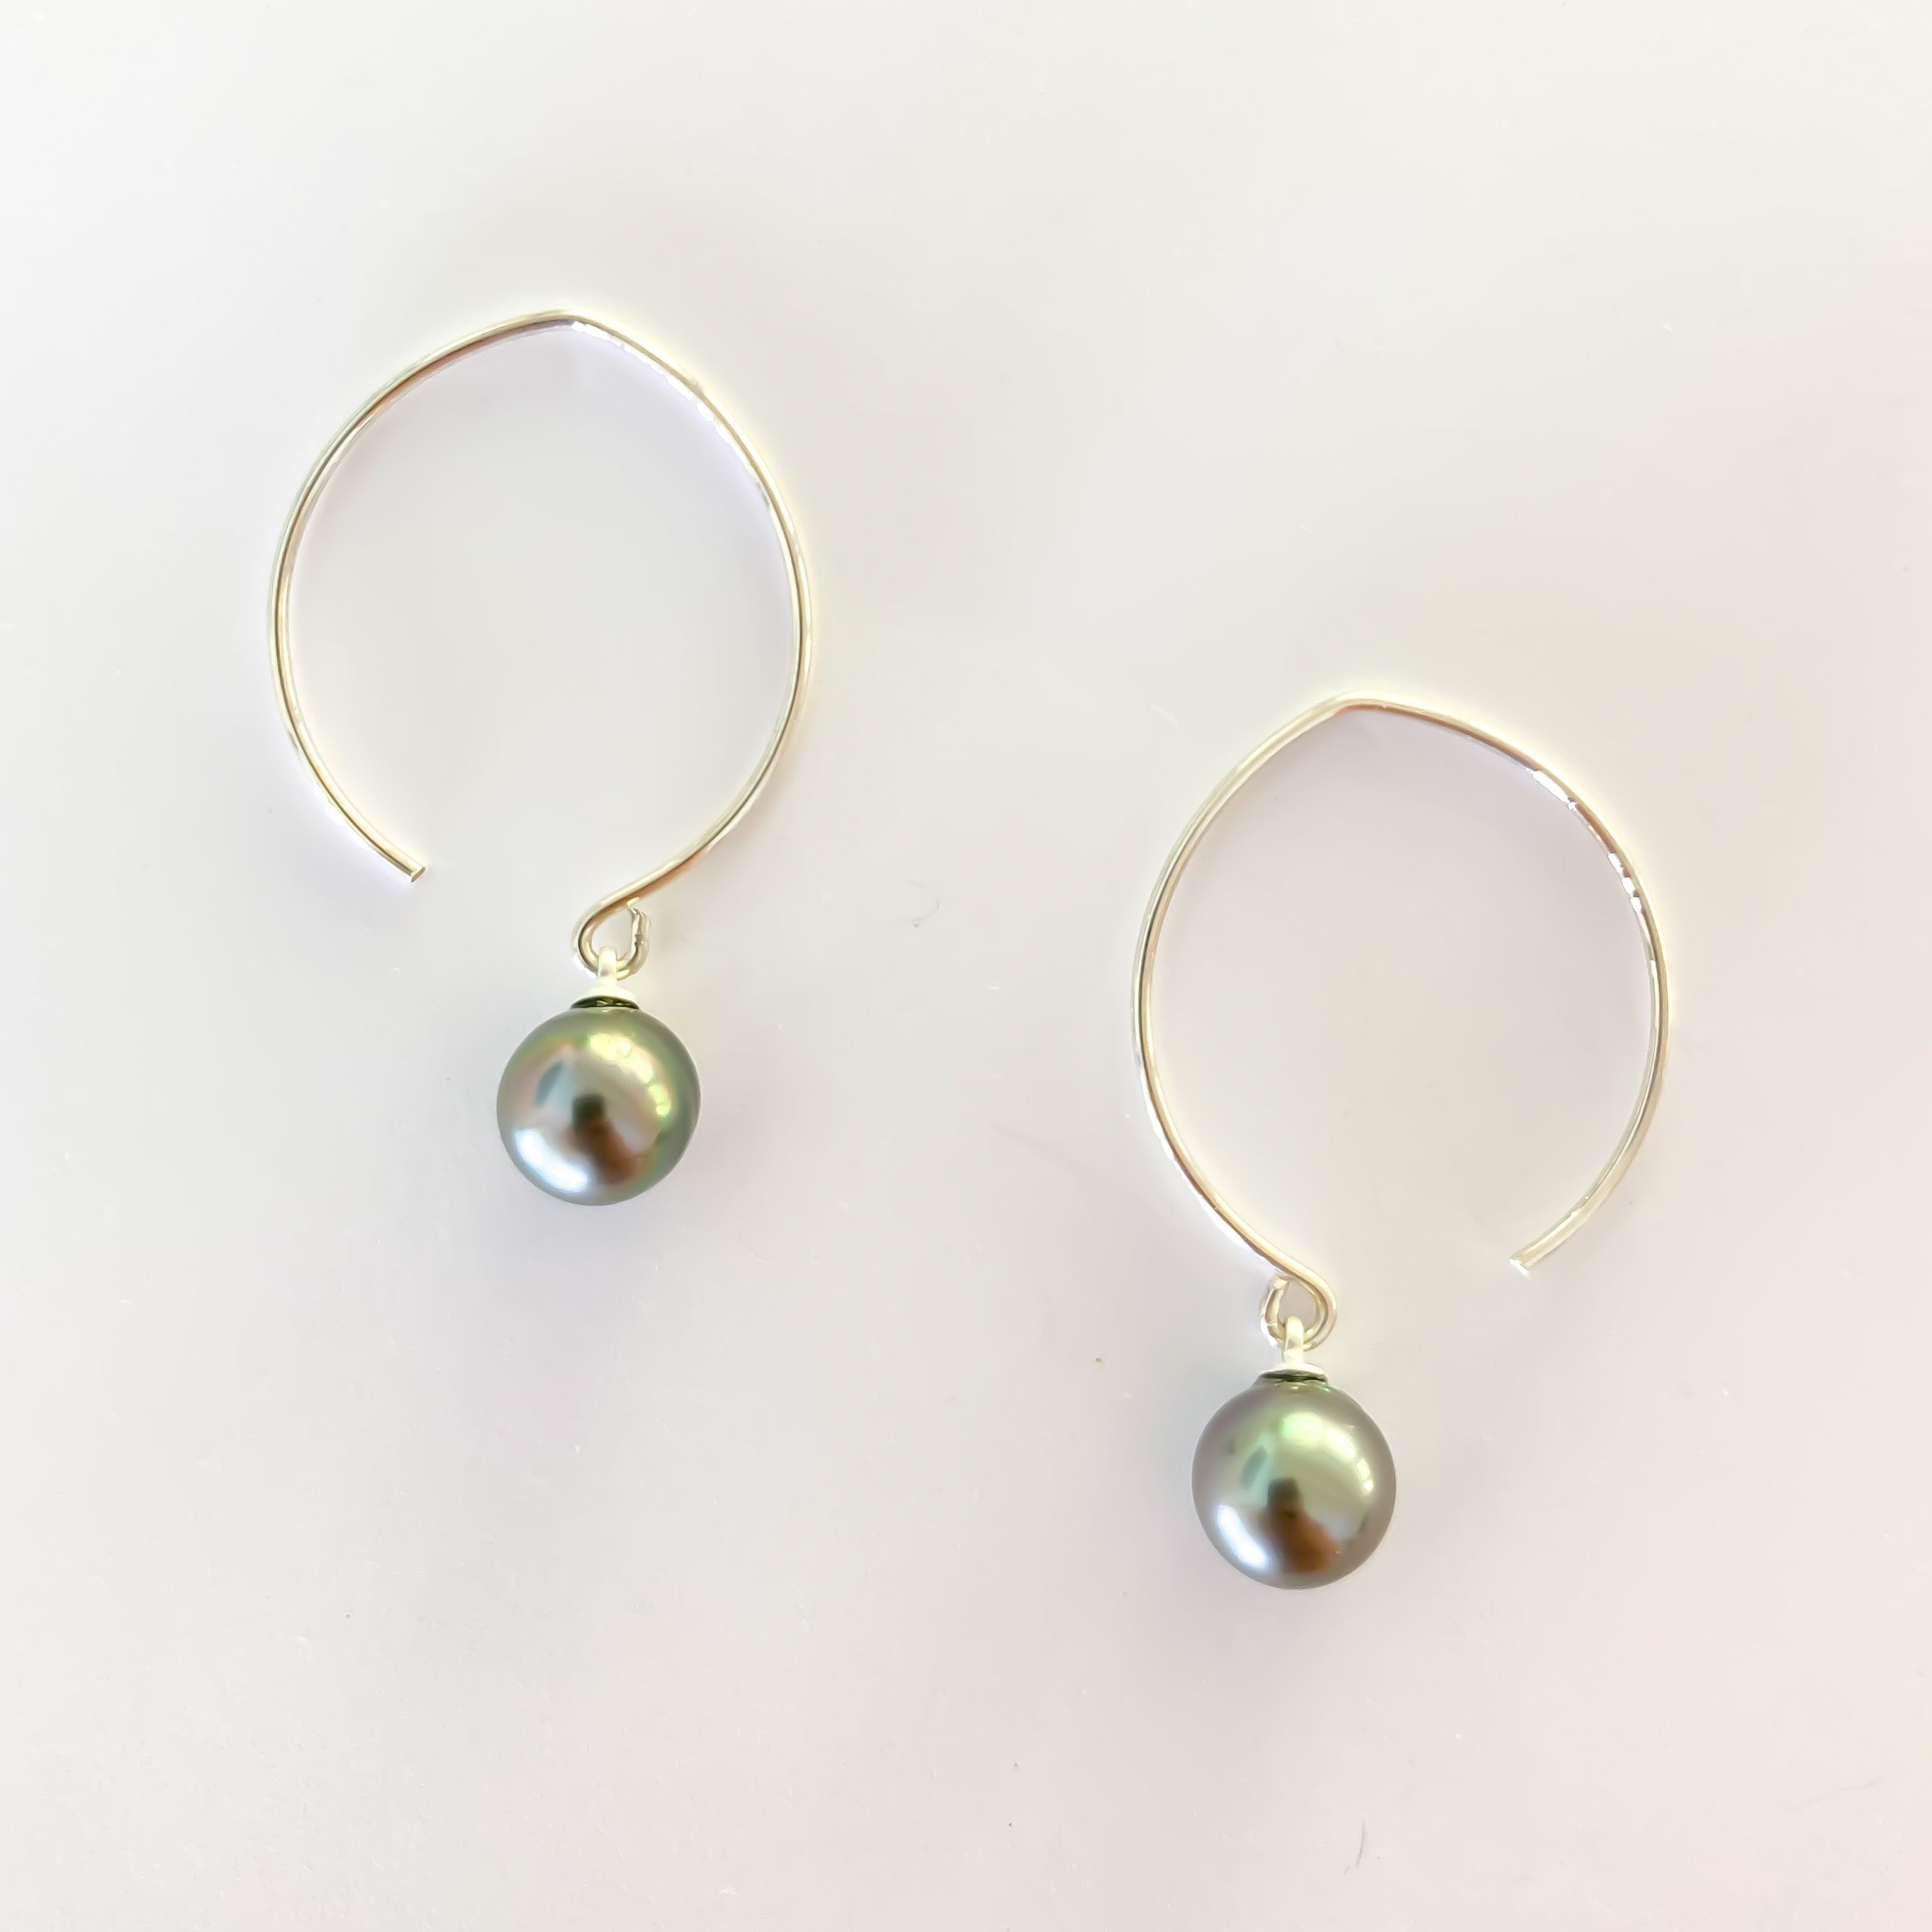 Tahitian Pearl earrings, island jewelry, handcrafted in Hawaii, Hawaiian jewelry earrings, grey pearl earrings, Hawaiian design gold earrings, Hawaiian design silver earrings